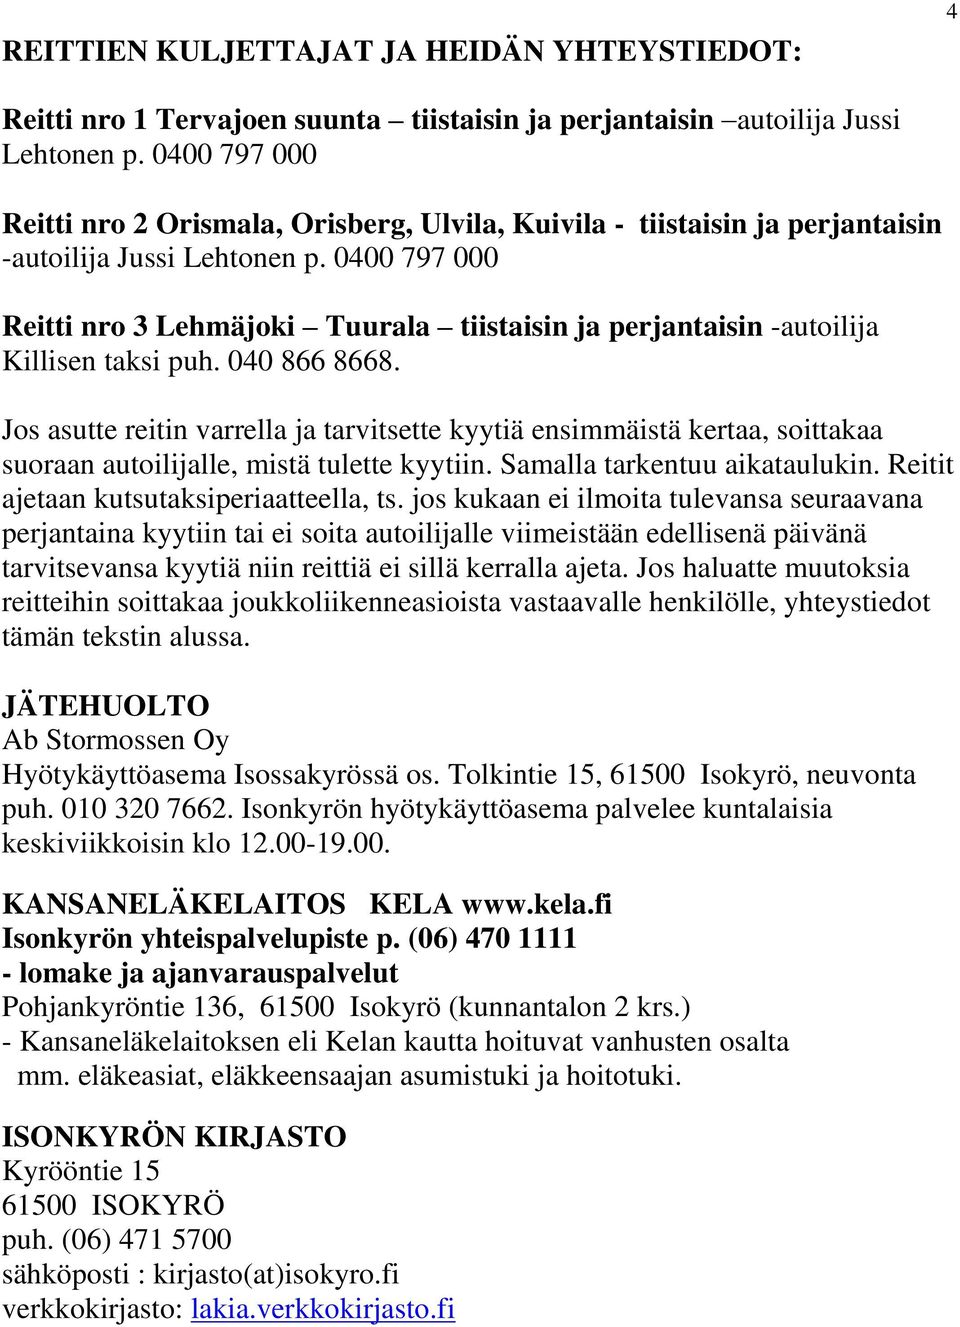 0400 797 000 Reitti nro 3 Lehmäjoki Tuurala tiistaisin ja perjantaisin -autoilija Killisen taksi puh. 040 866 8668.